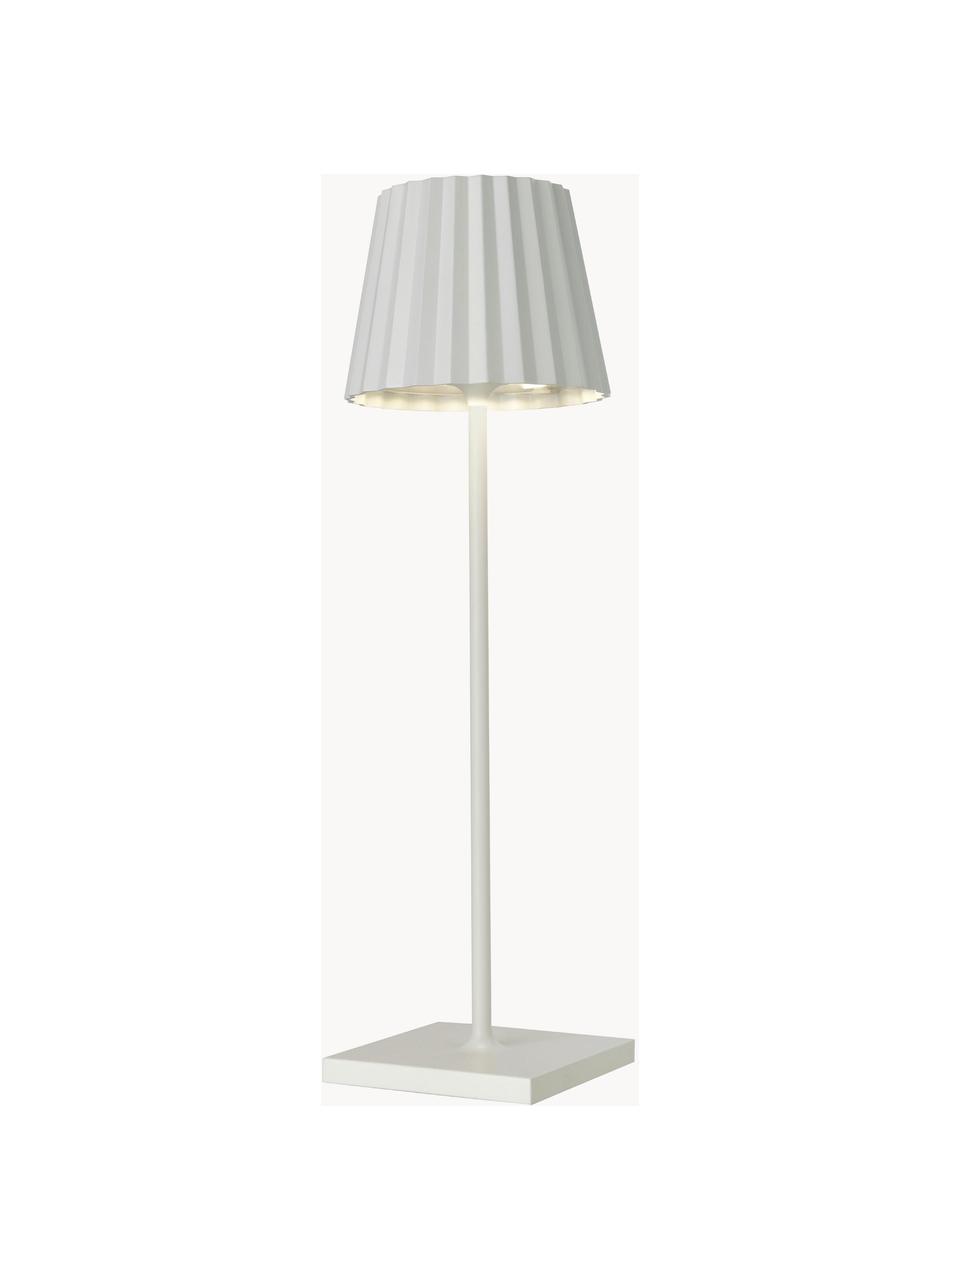 Lampada mobile da tavolo per esterni a LED  dimmerabile Trellia, Paralume: alluminio verniciato, Bianco, Ø 12 x Alt. 38 cm